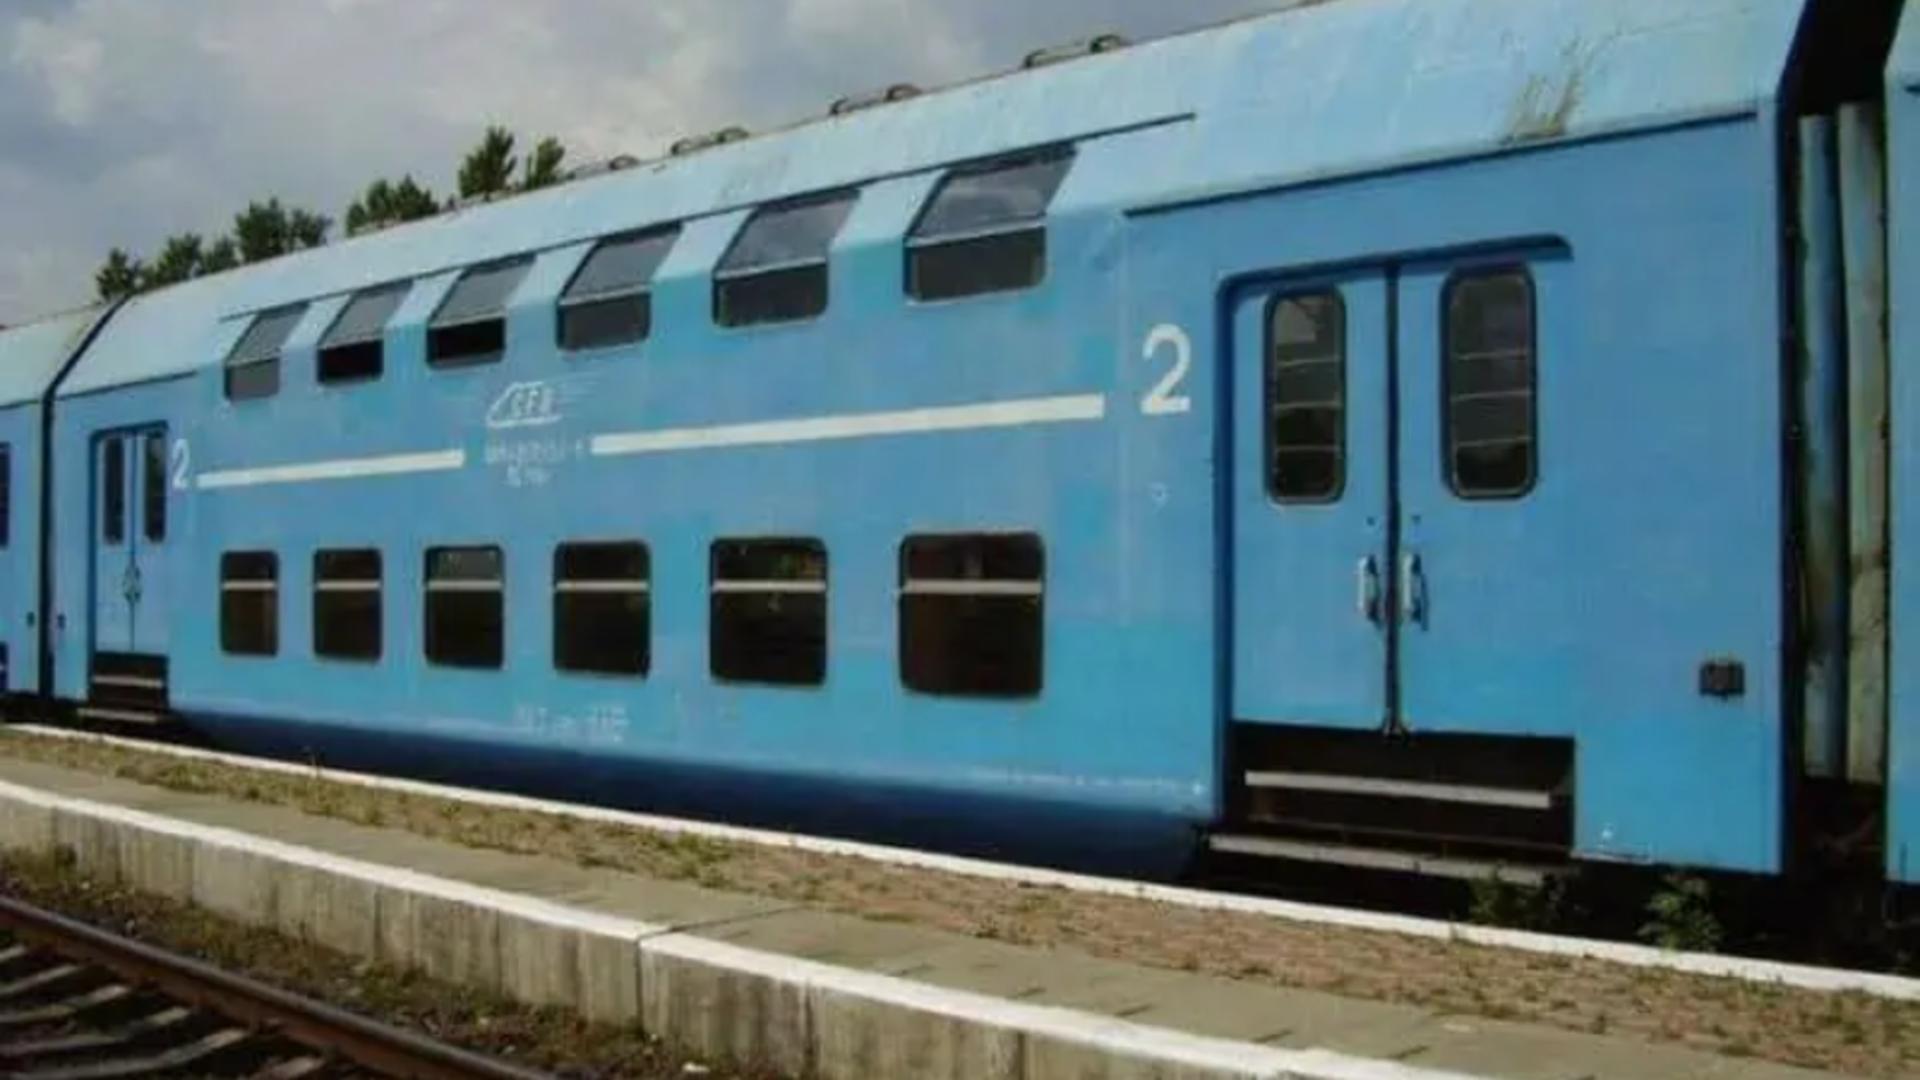 Cel mai lung tren de navetiști a circulat în România. “Cugireana” aducea mii de oameni la fabrica de armament